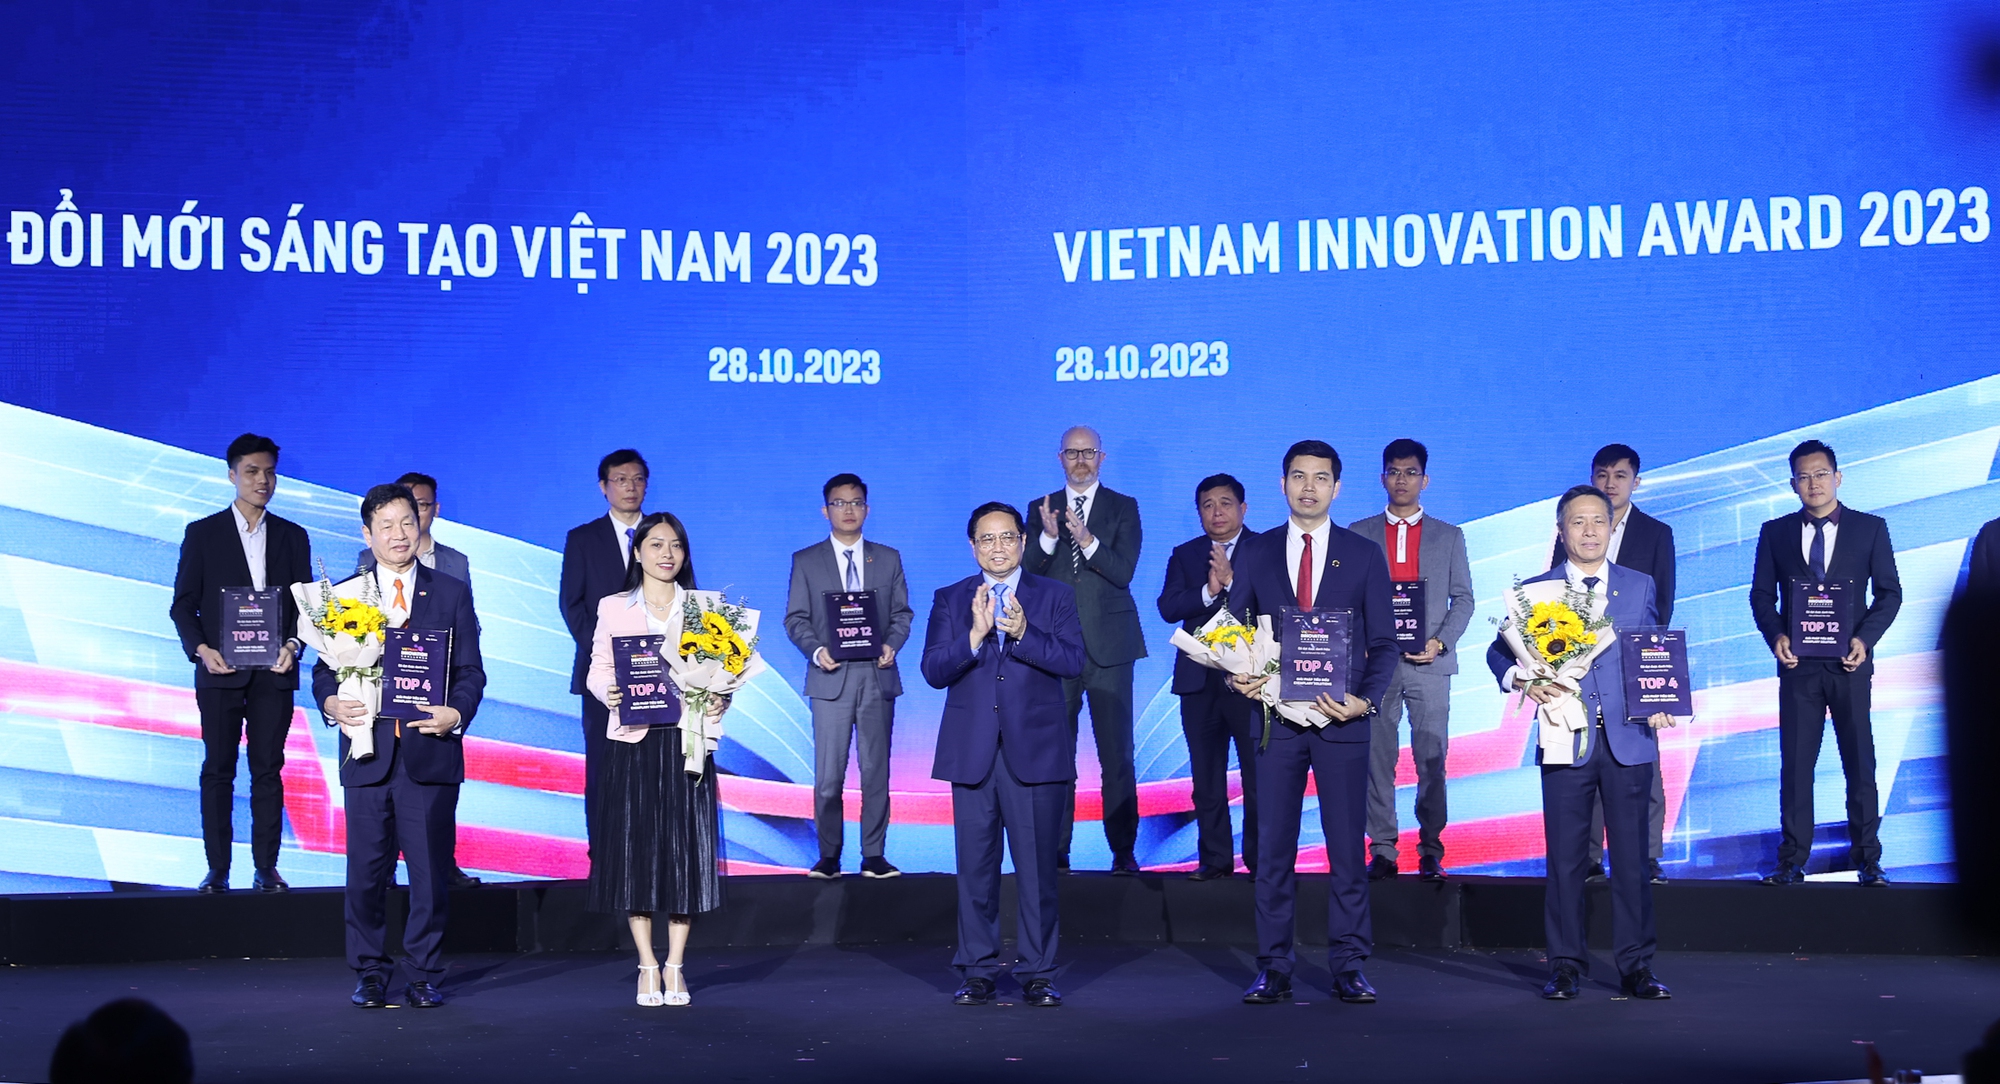 Thủ tướng Phạm Minh Chính trao giải thưởng Thách thức đổi mới sáng tạo Việt Nam 2023 cho 4 đơn vị đạt giải cao nhất - Ảnh: VGP/Nhật Bắc